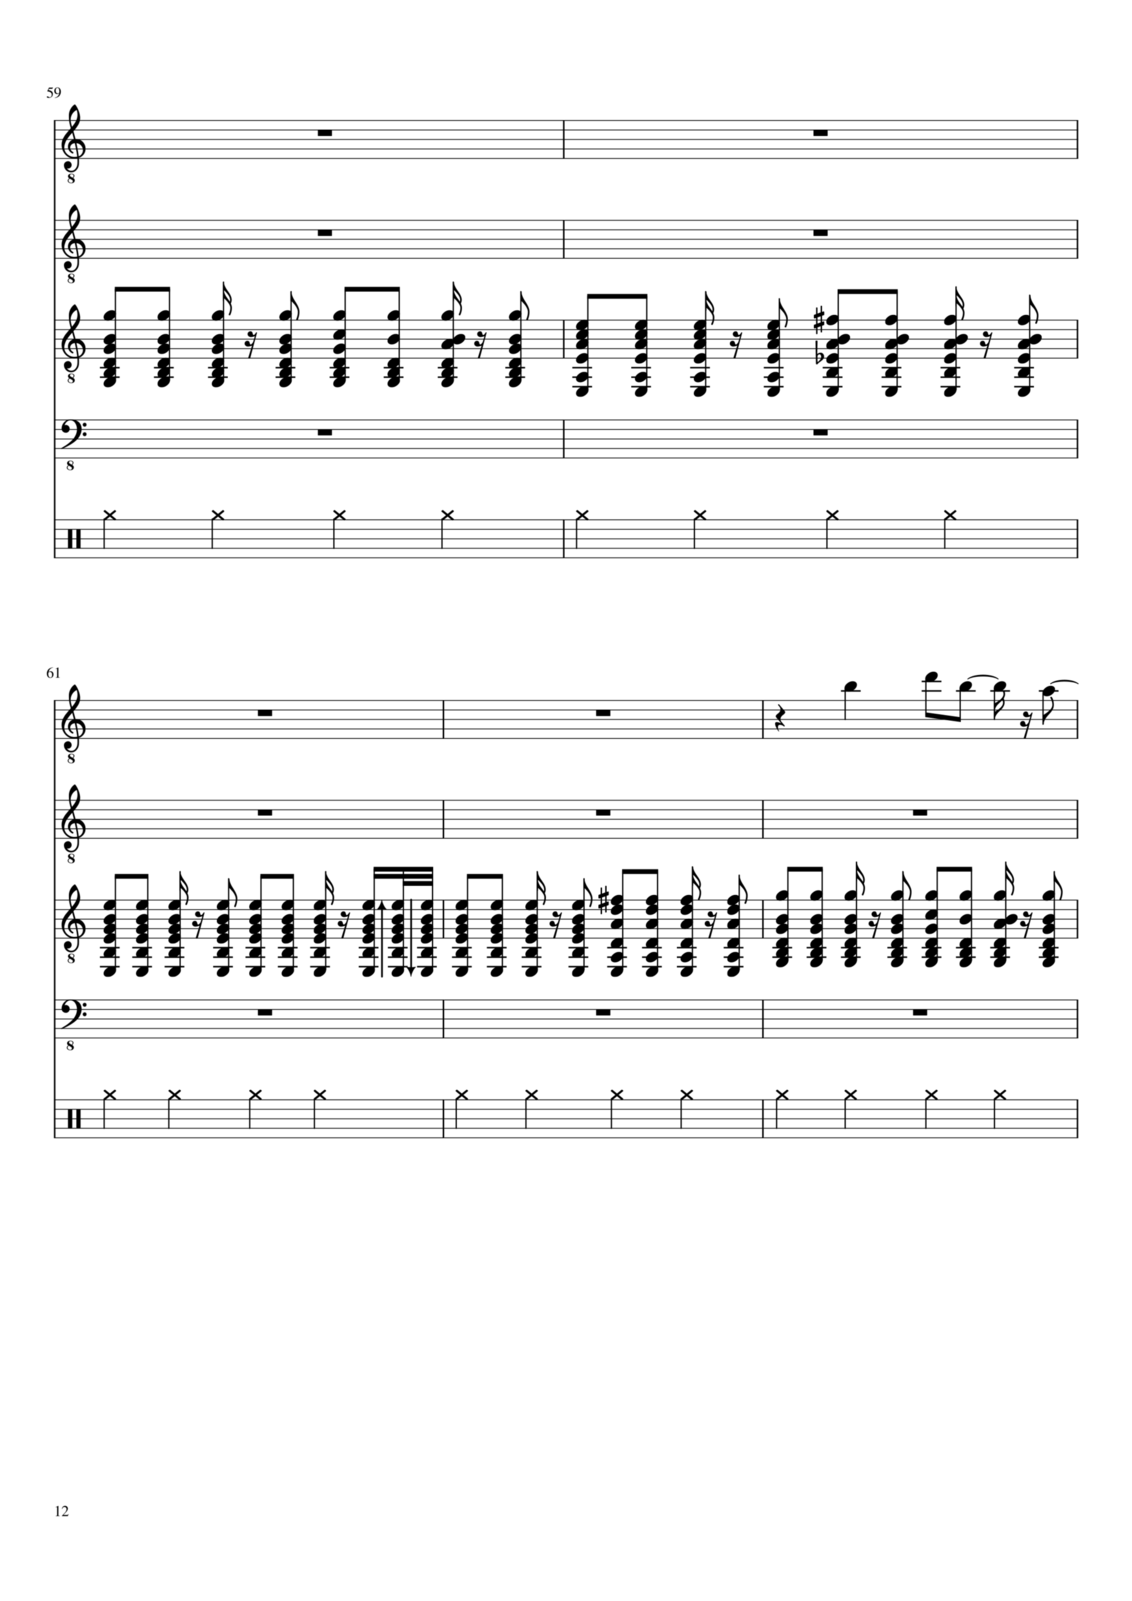 Vechnaya molodost slide, Image 12